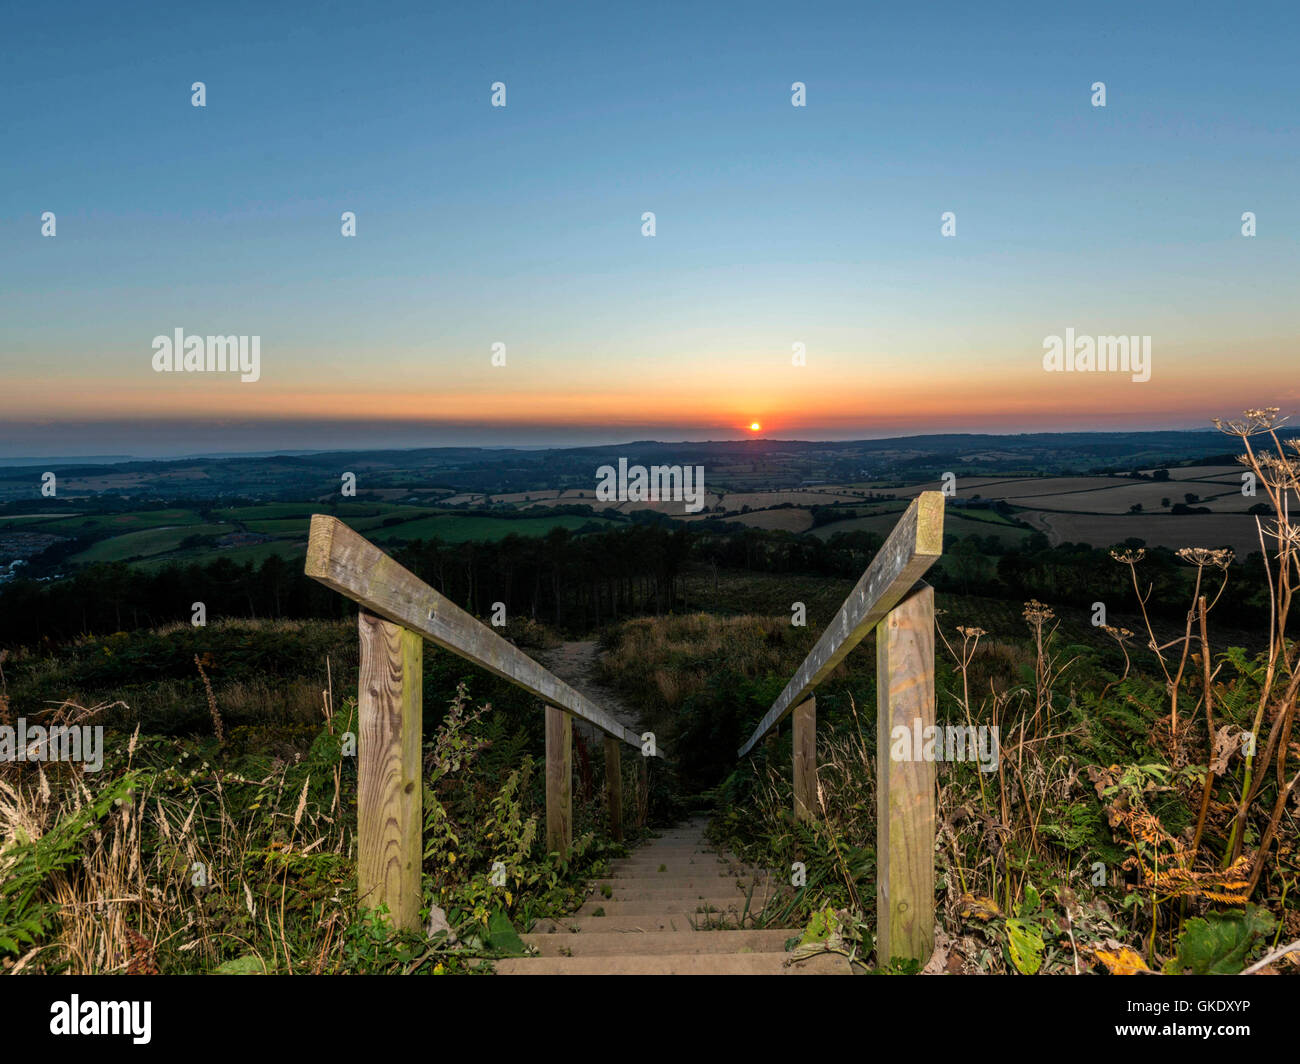 Représentant le paysage coucher de soleil sur Devon. Image prise au point haut escalier en bois plate-forme panoramique, Ladram Bay Banque D'Images